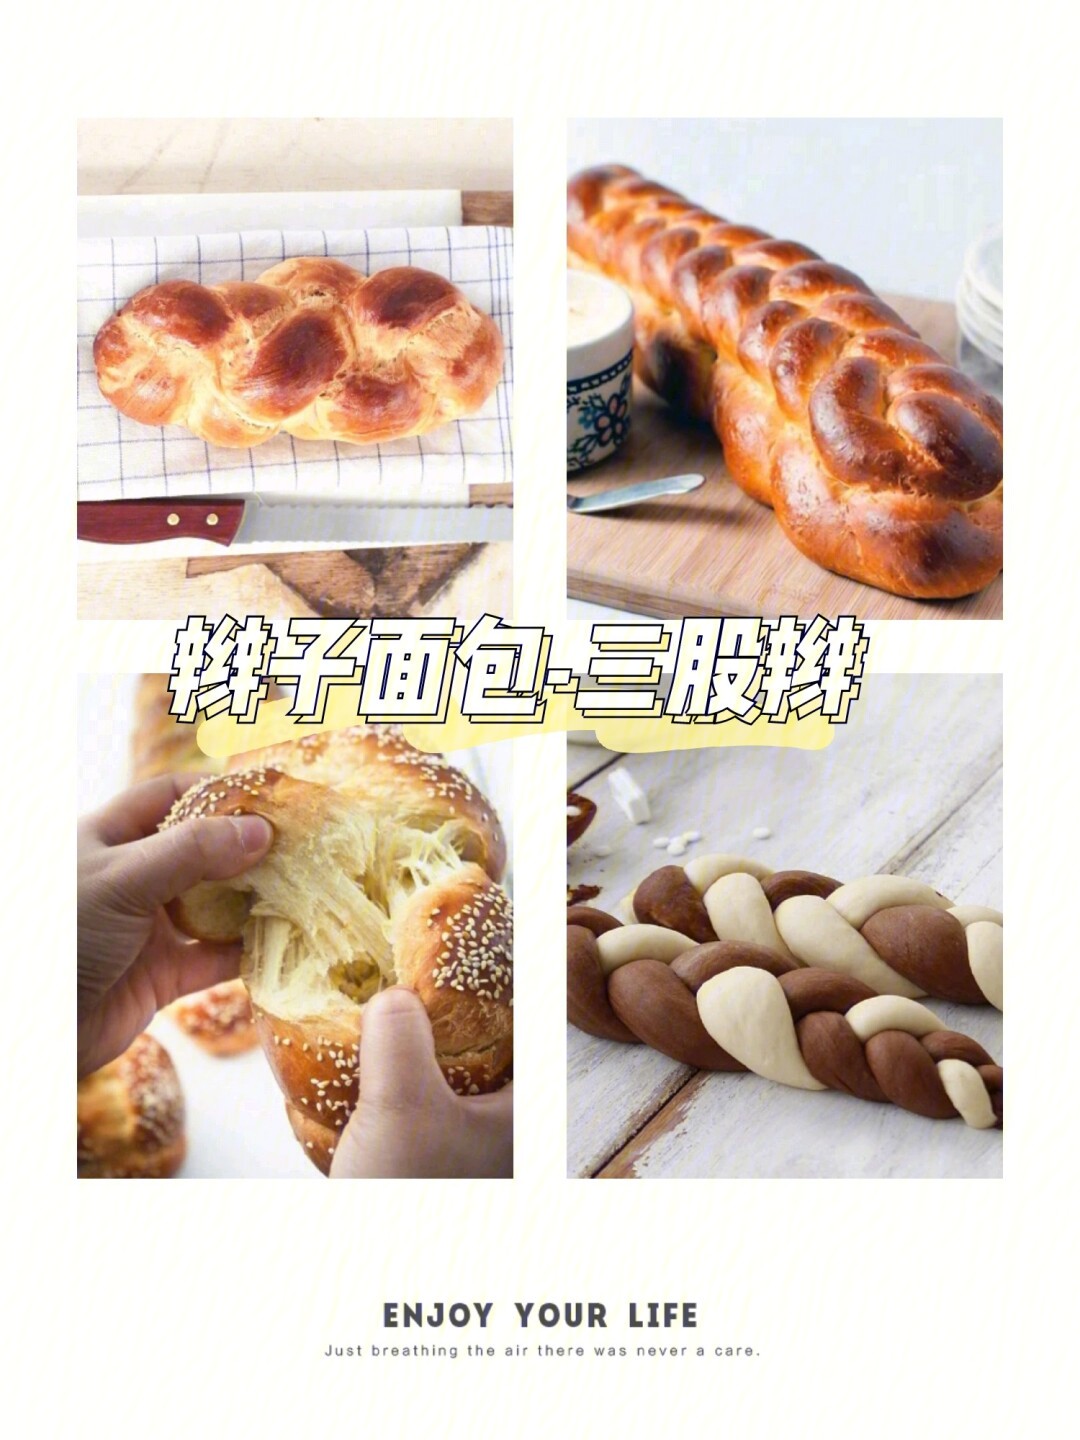 包面包法十种包法图解图片